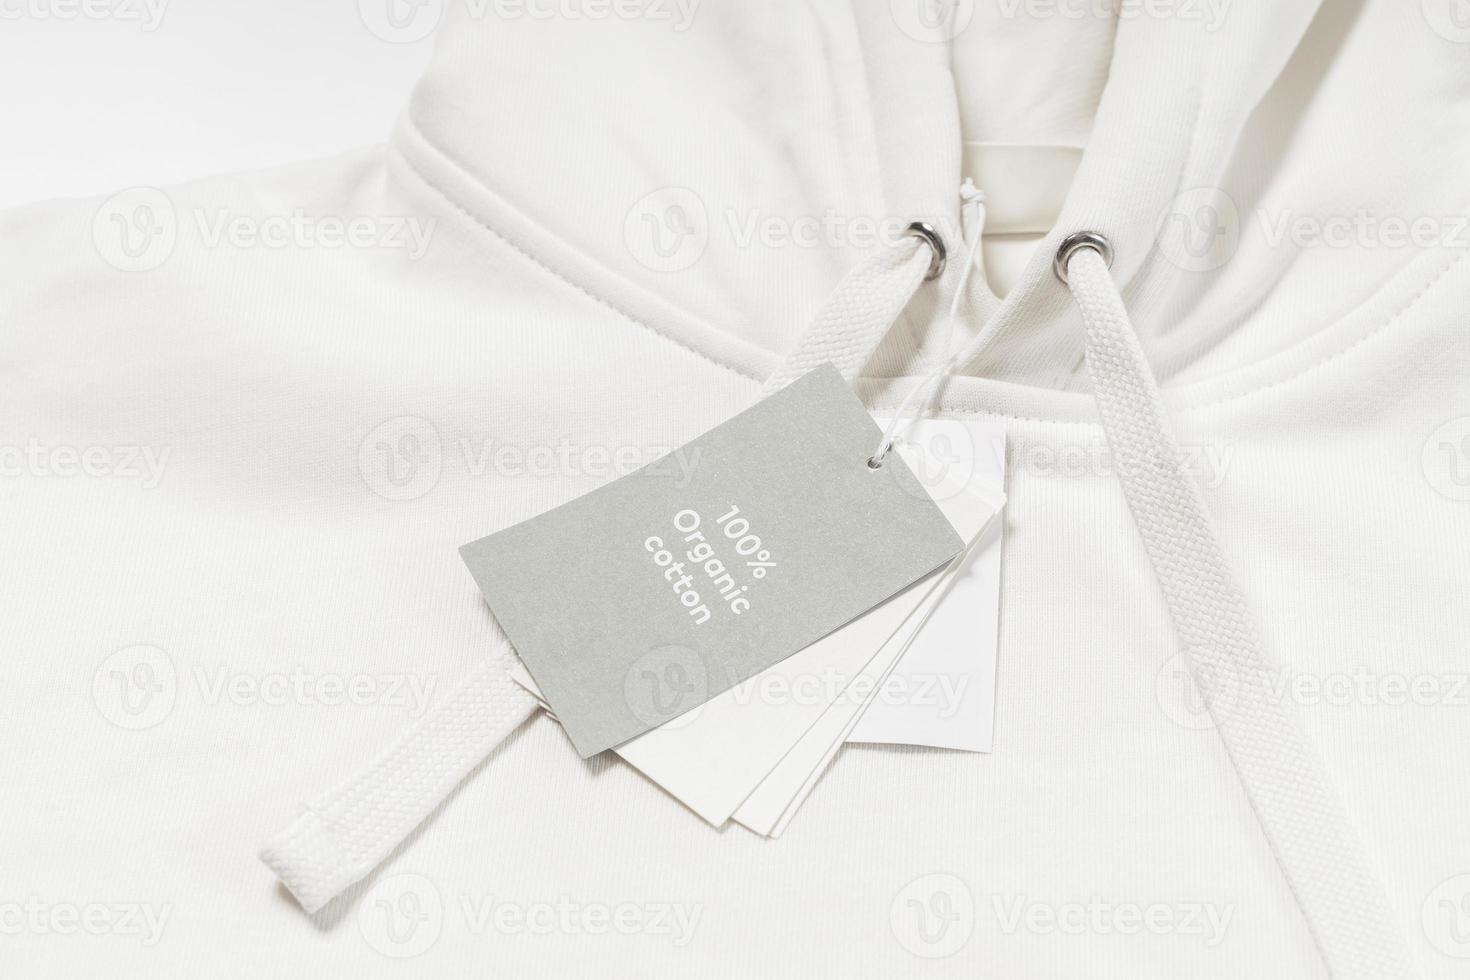 etiqueta de papel en una sudadera con capucha blanca 100% algodón orgánico foto